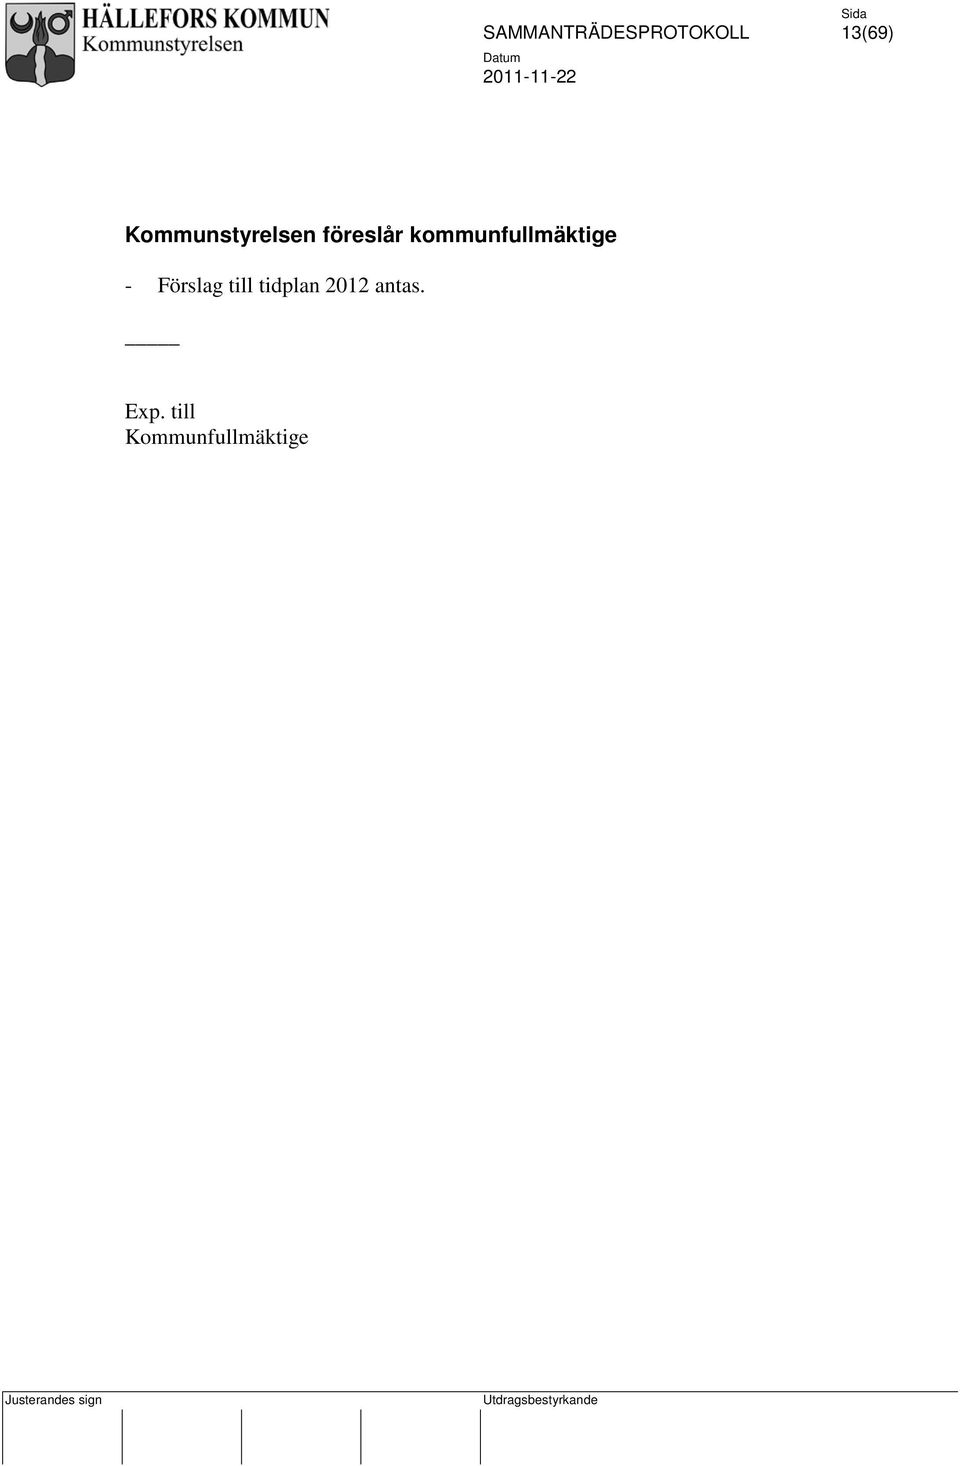 - Förslag till tidplan 2012